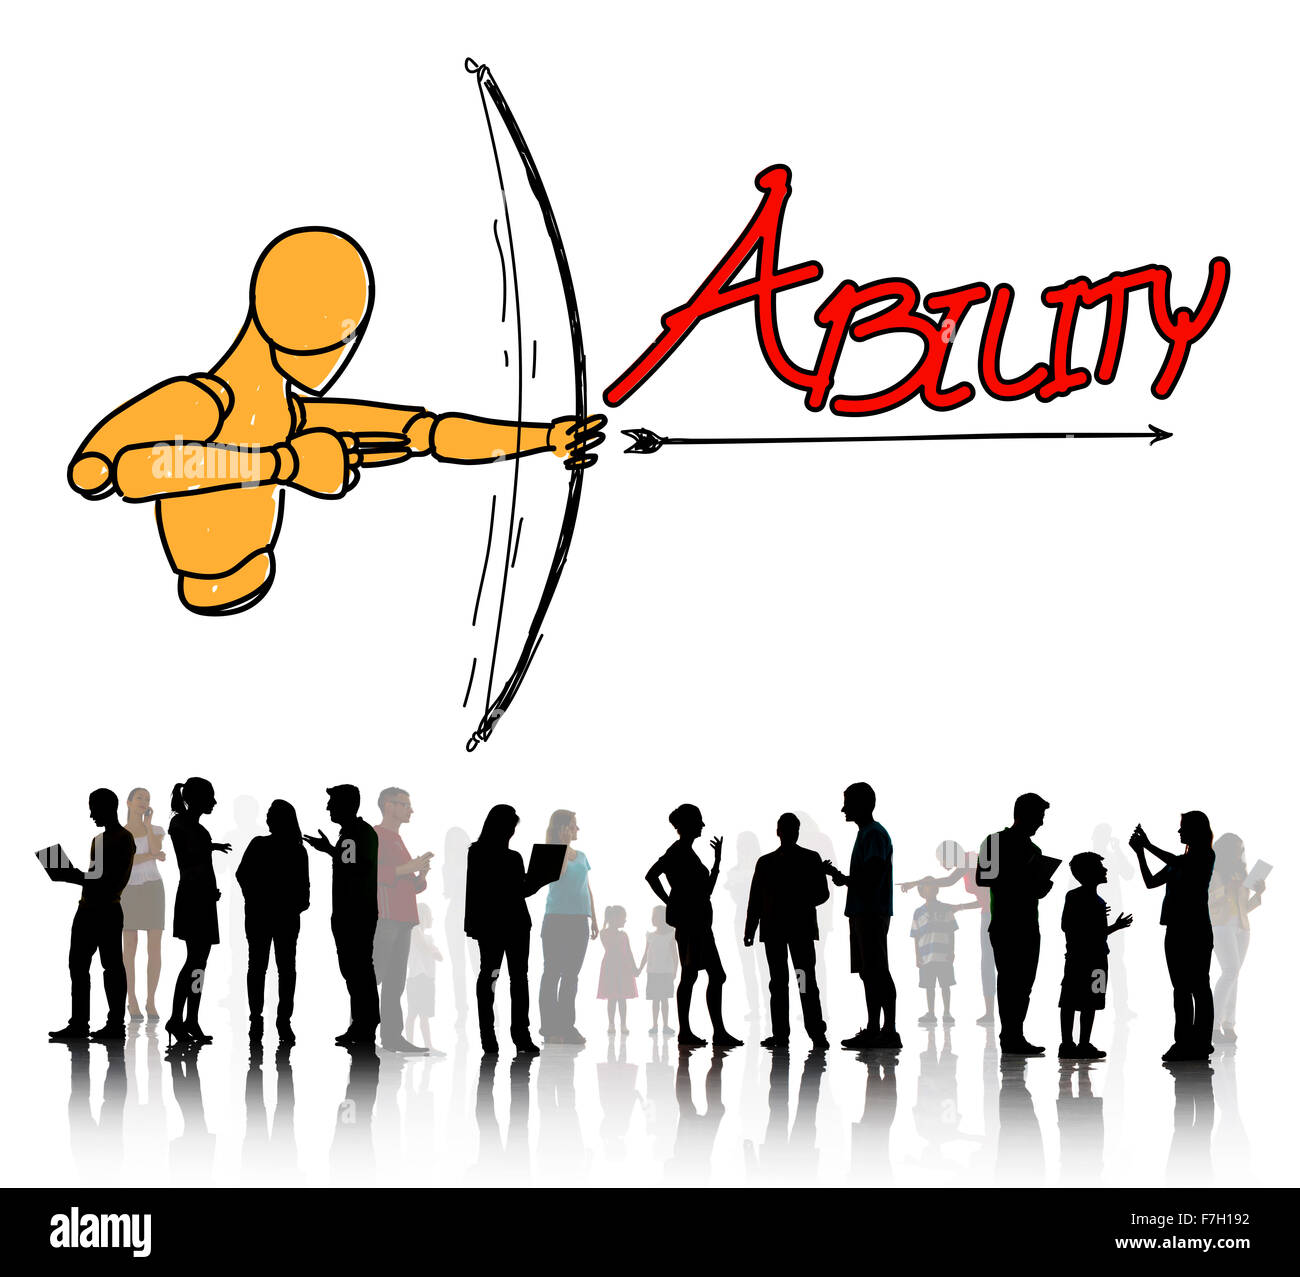 The arrow's ability 